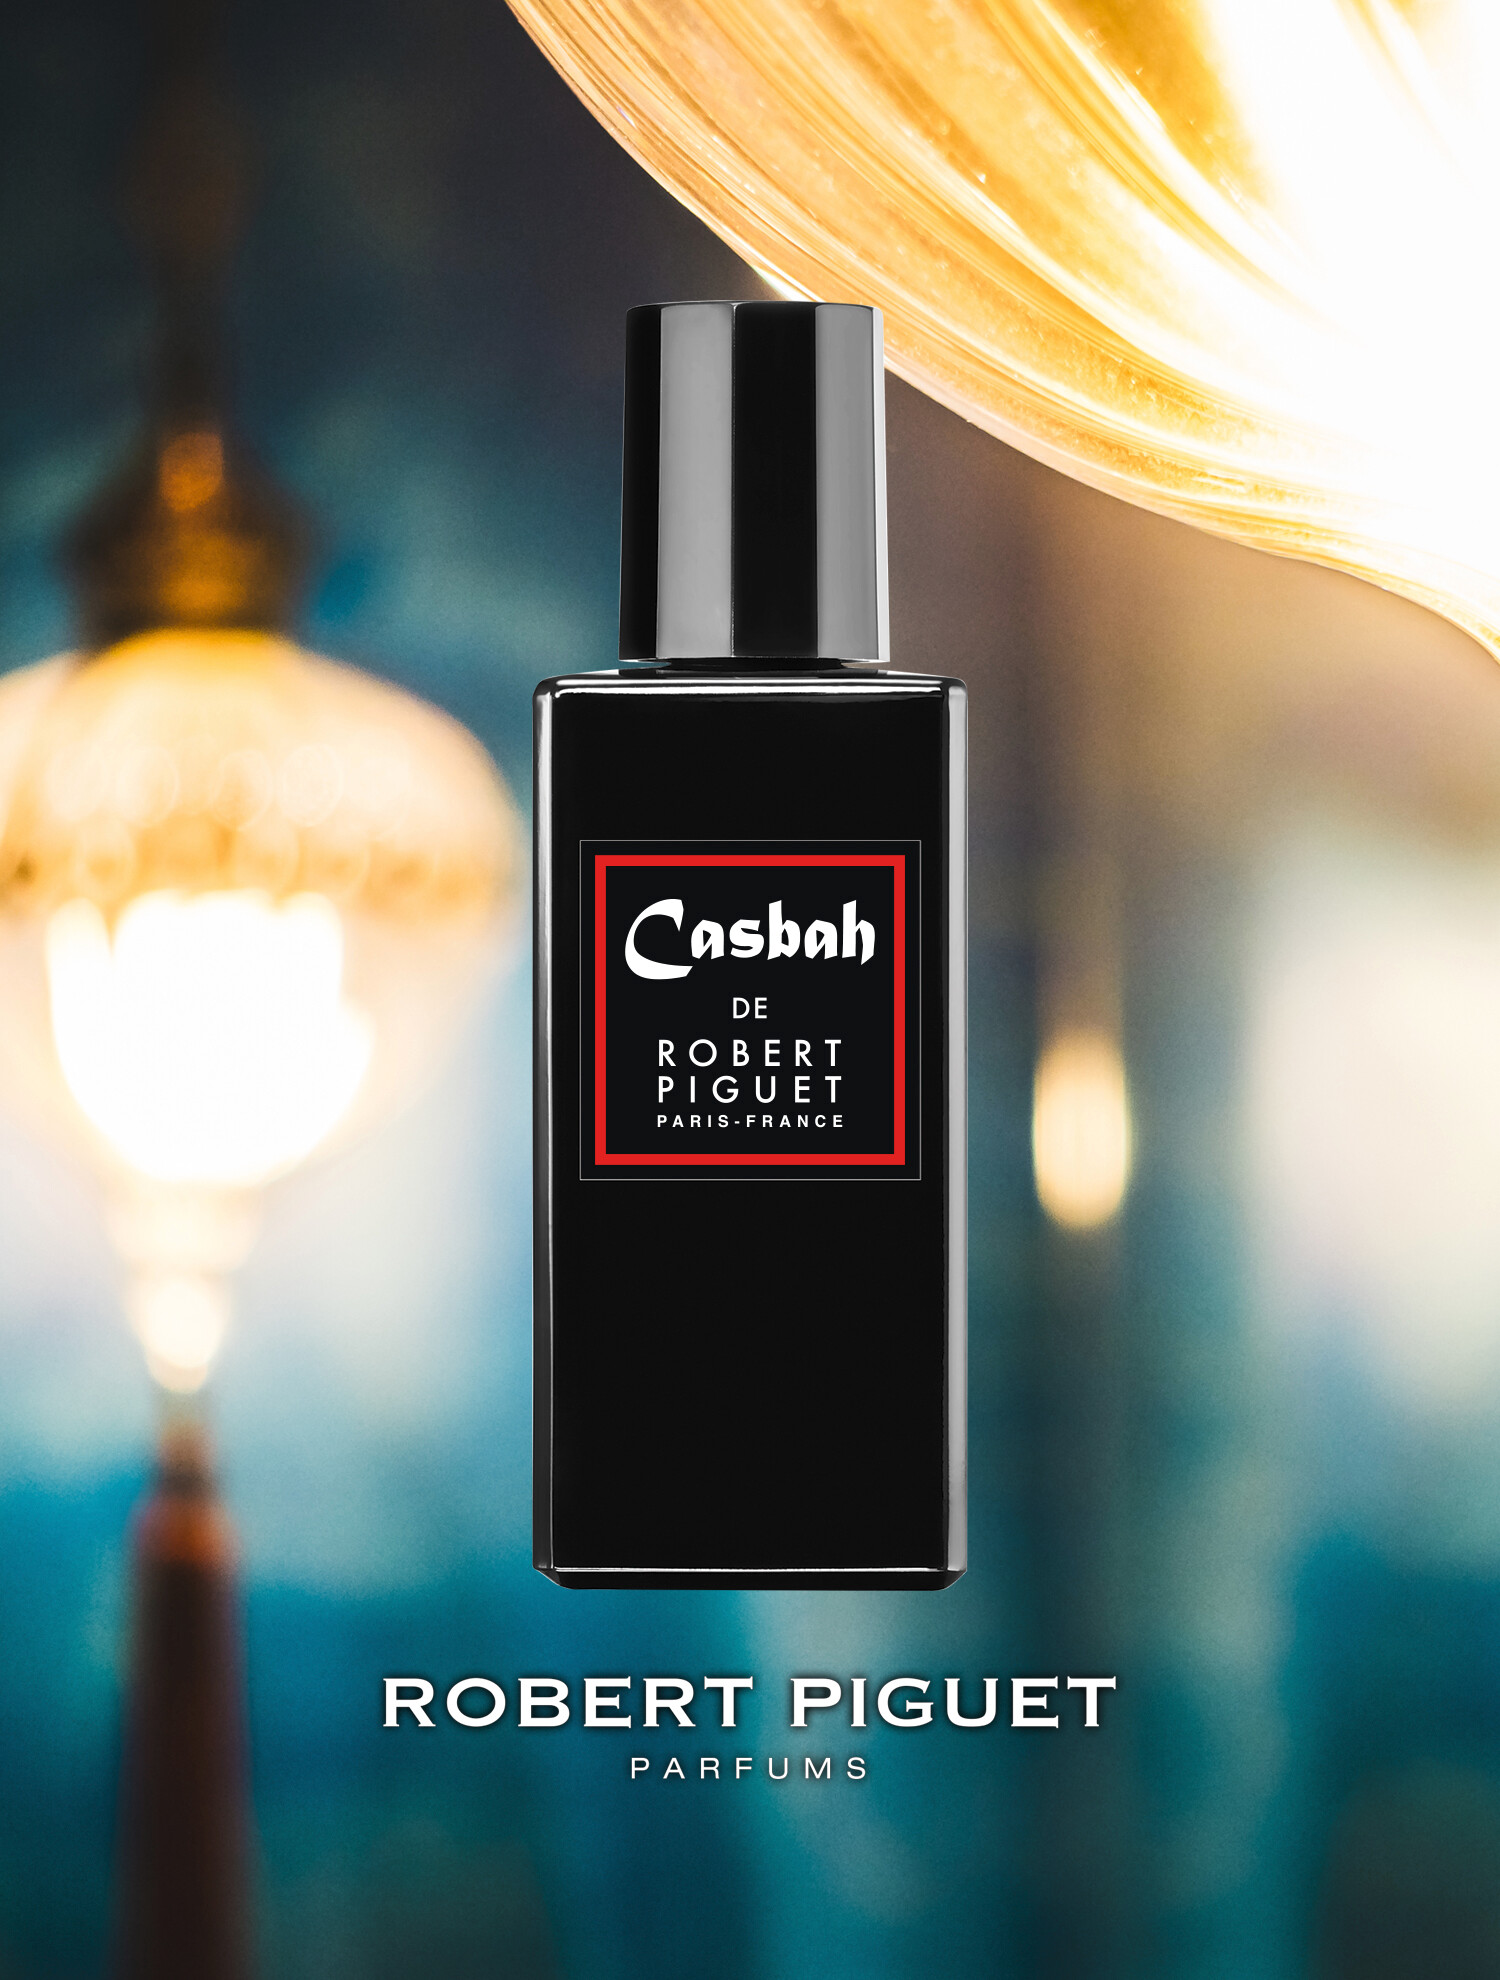 Robert Piguet Parfums Casbah 100ml | Fenwick